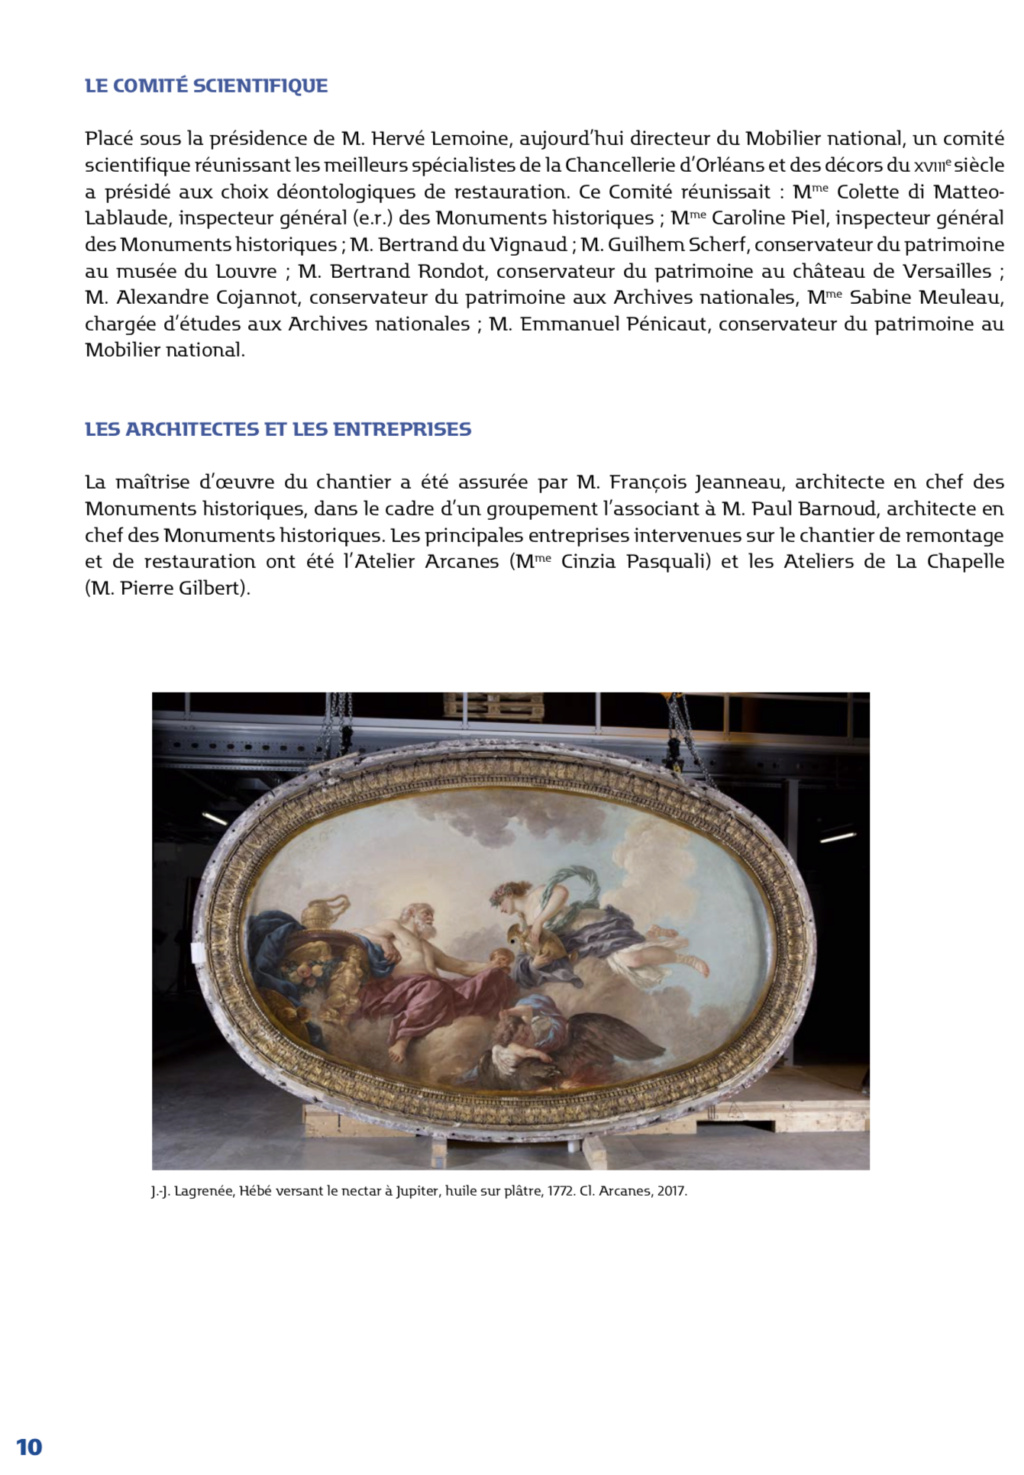 L'hôtel de Rohan (Paris), et les décors de la Chancellerie d’Orléans - Page 2 Capt3943